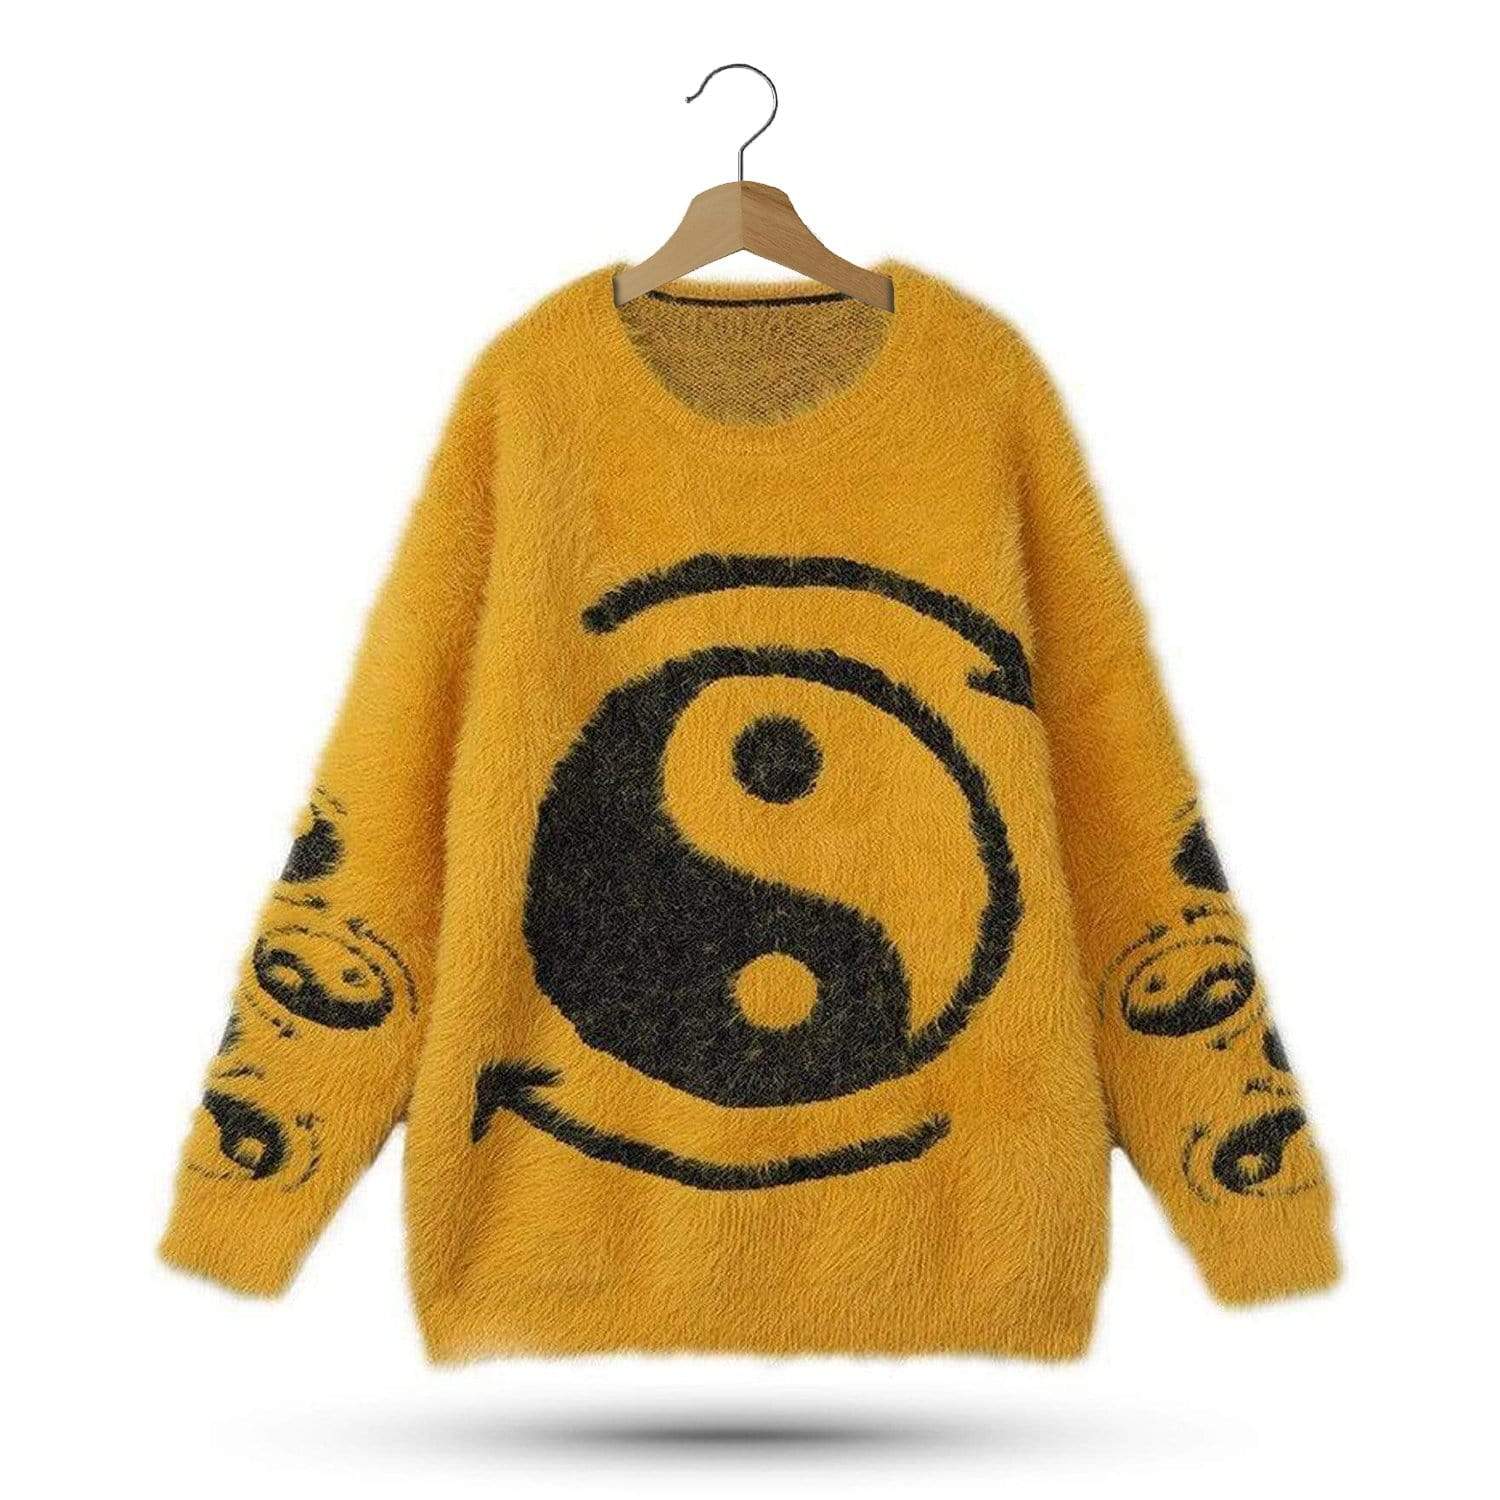 Yin Yang Knit Sweater | Yin Yang Paradise